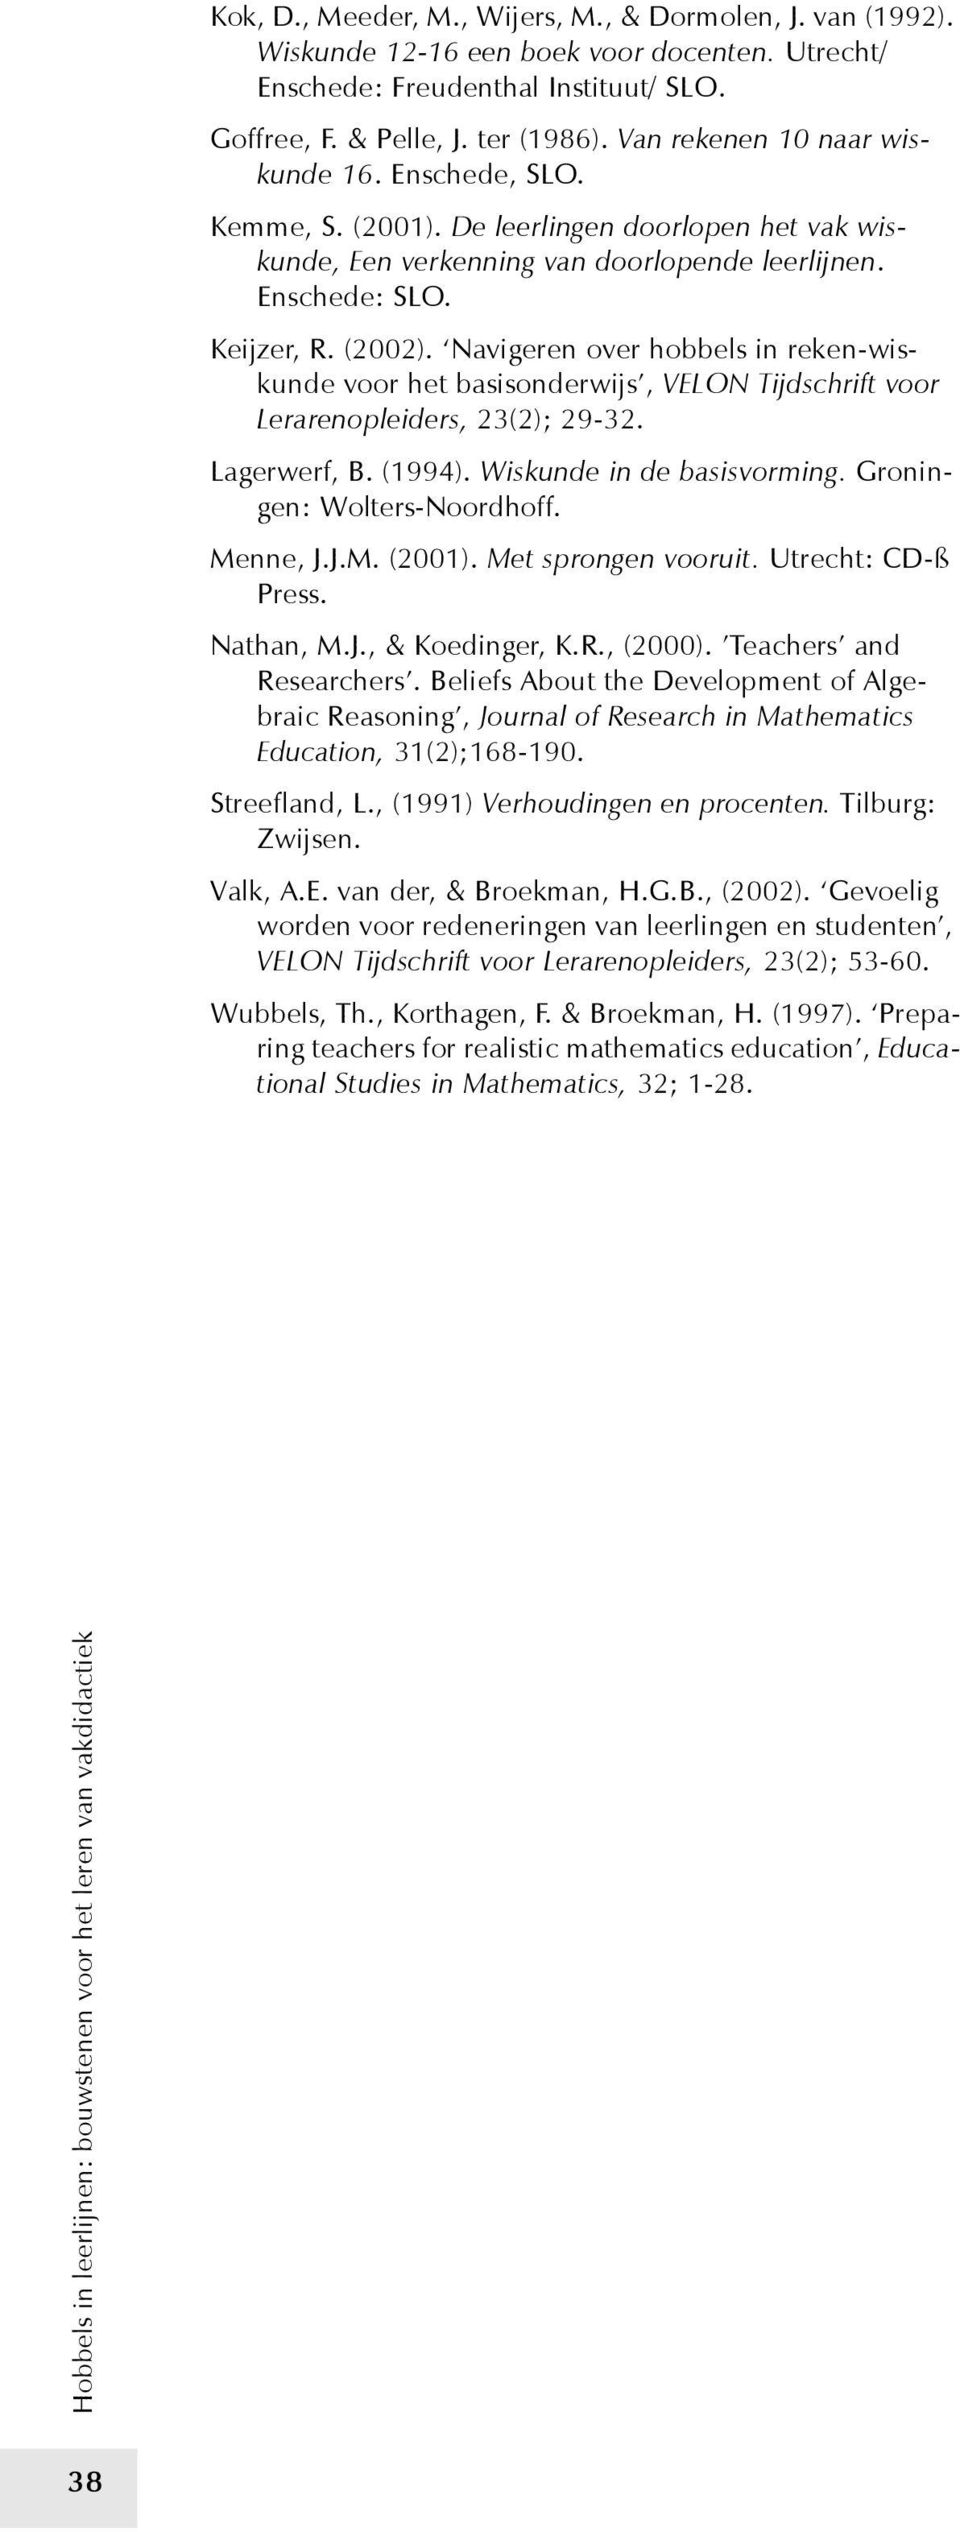 Navigeren over hobbels in reken-wiskunde voor het basisonderwijs, VELON Tijdschrift voor Lerarenopleiders, 23(2); 29-32. Lagerwerf, B. (1994). Wiskunde in de basisvorming.